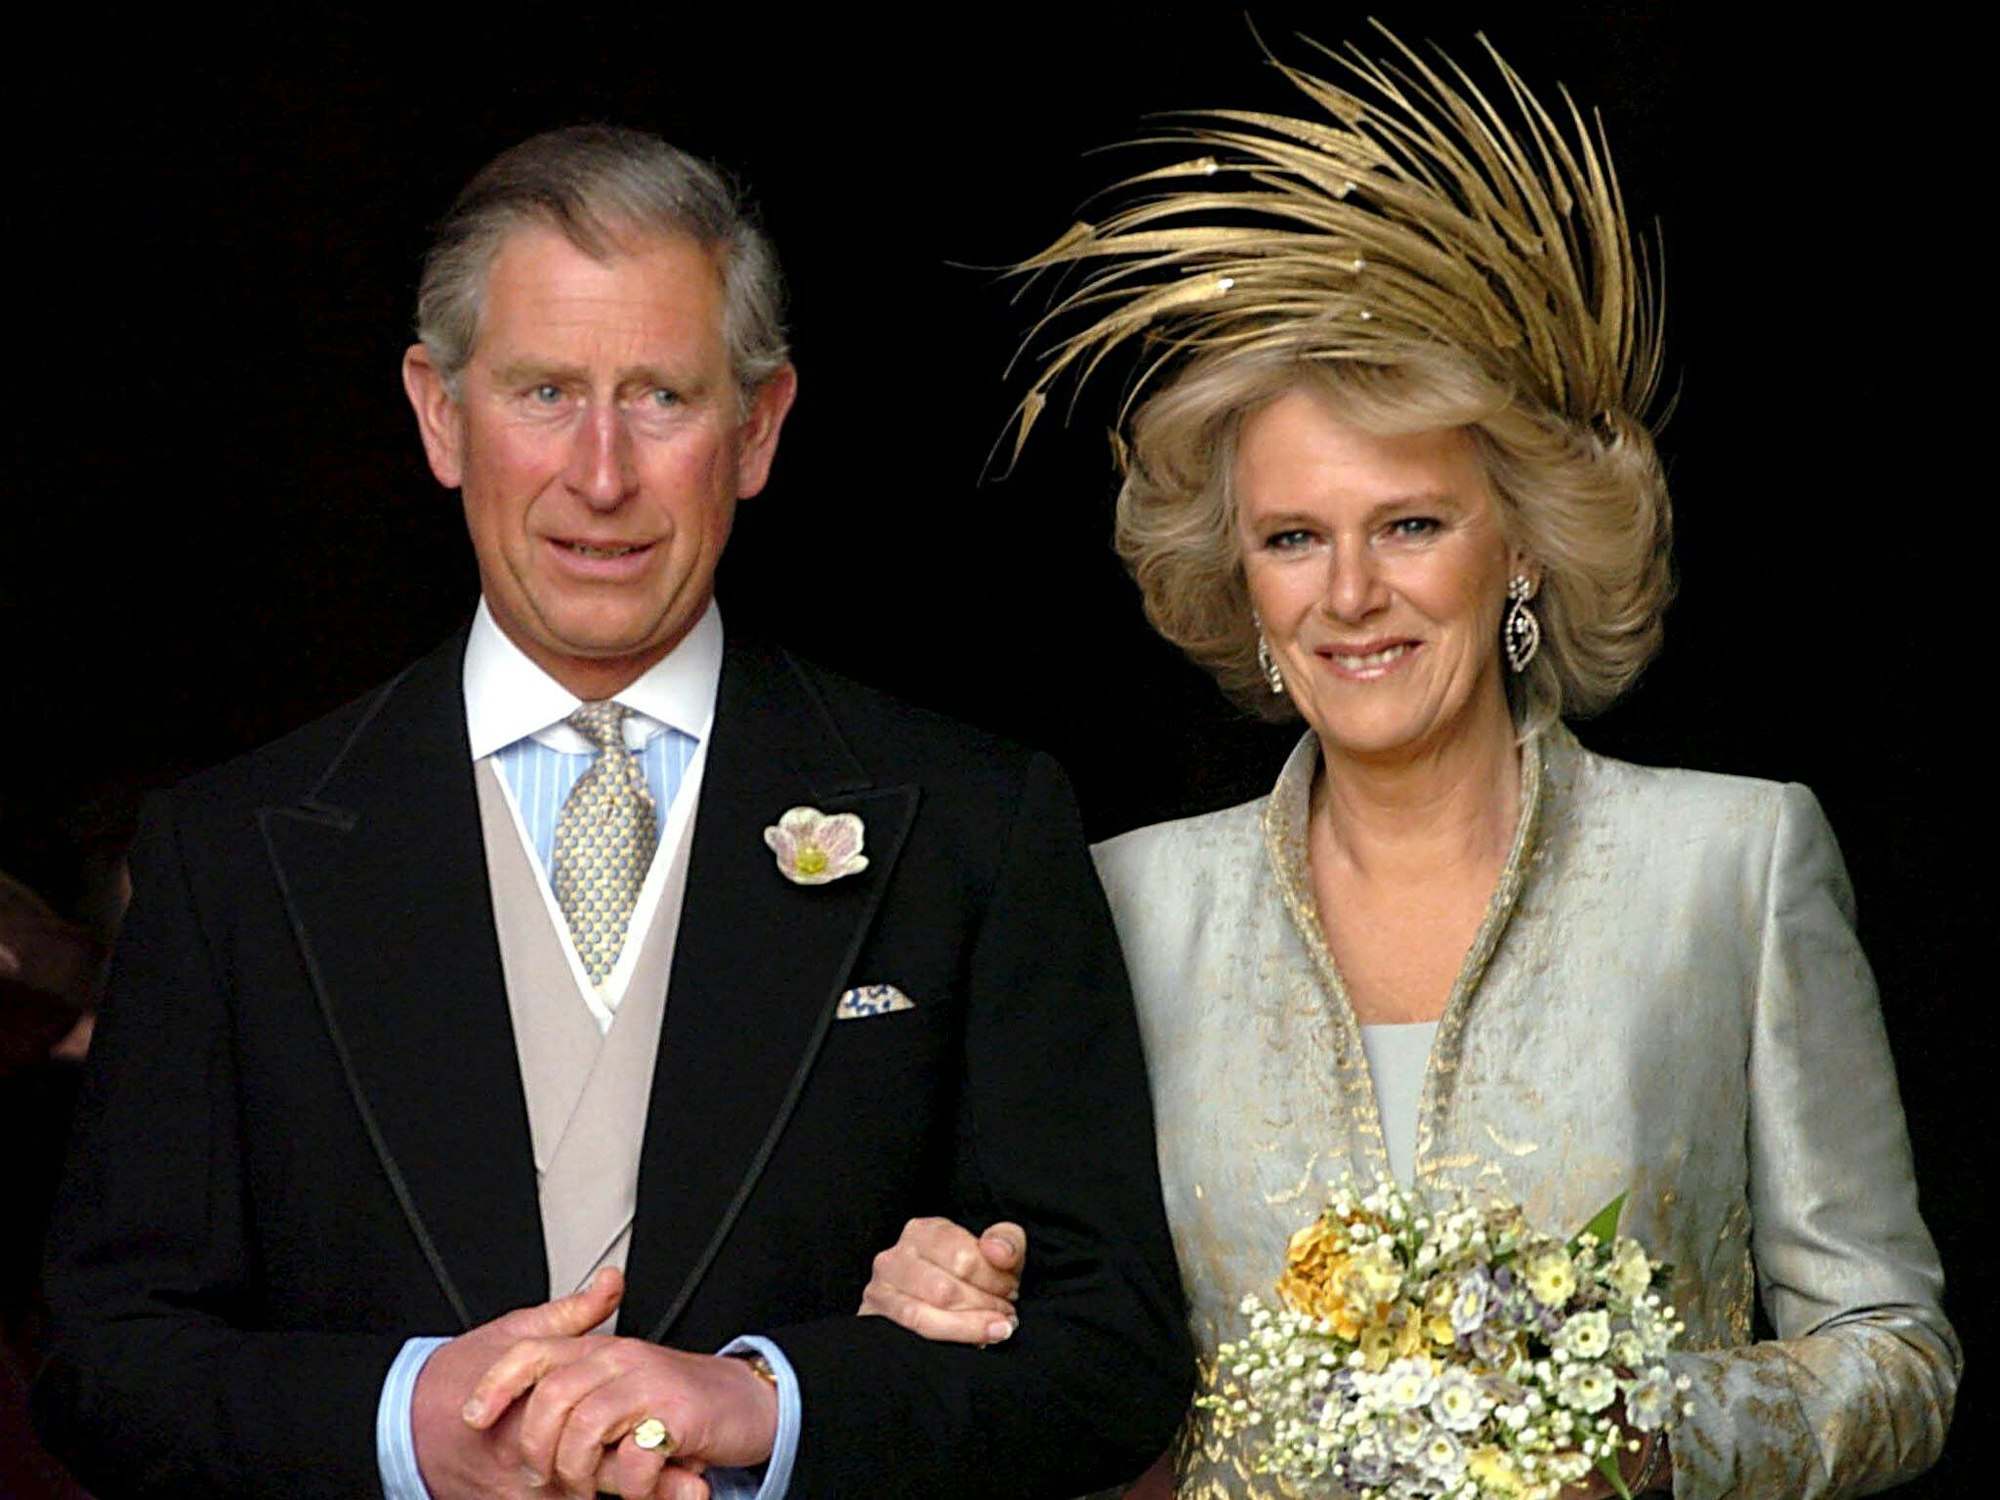 Kronprinz Charles und Camilla am 9. April 2005 bei ihrer Hochzeit in Windsor.